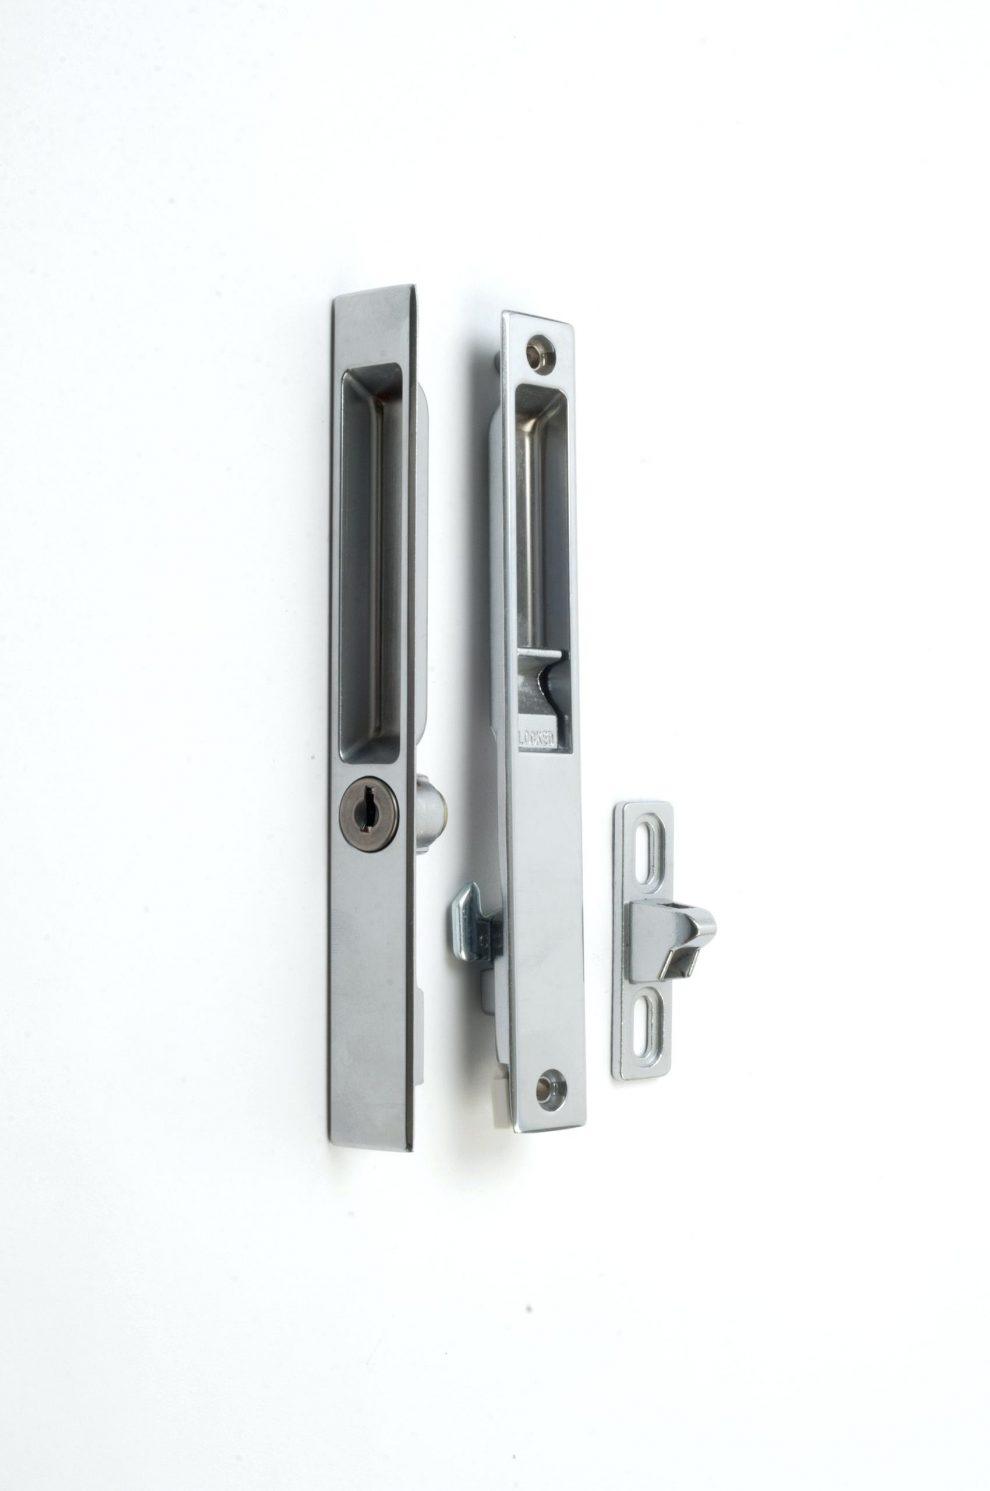 Pella Sliding Door Exterior Handle Key Locksliding glass door handle with key lock sliding glass door handle